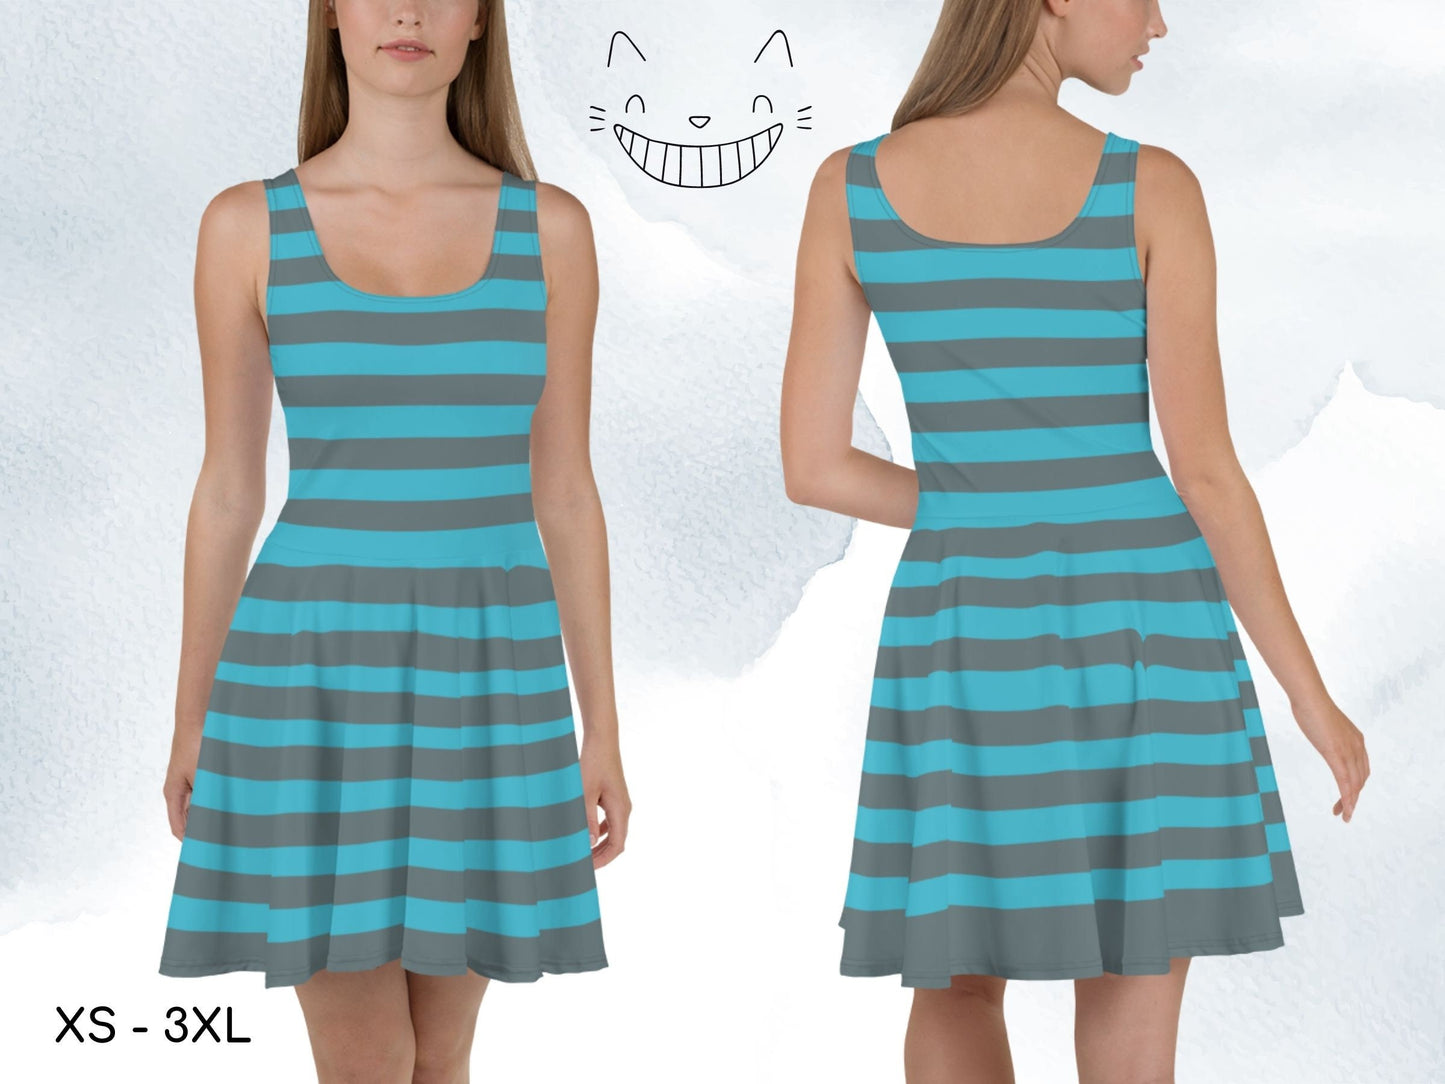 Cheshire Cat Blue Inspired Skater Dress, Alice in Wonderland, Adult Halloween Costume, Gift for Her, Cosplay Dress, Skater Dress